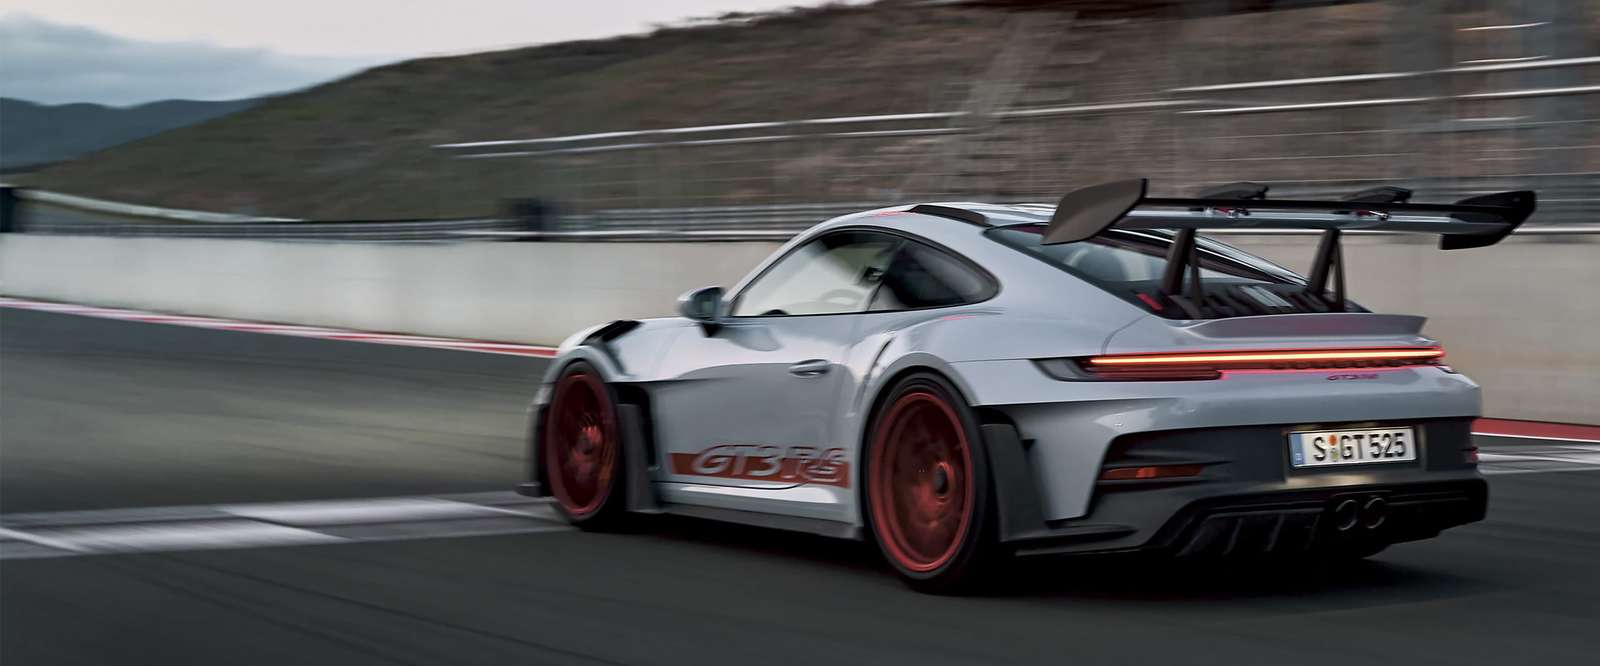 911 GT3 RS 写真からオンラインパズル